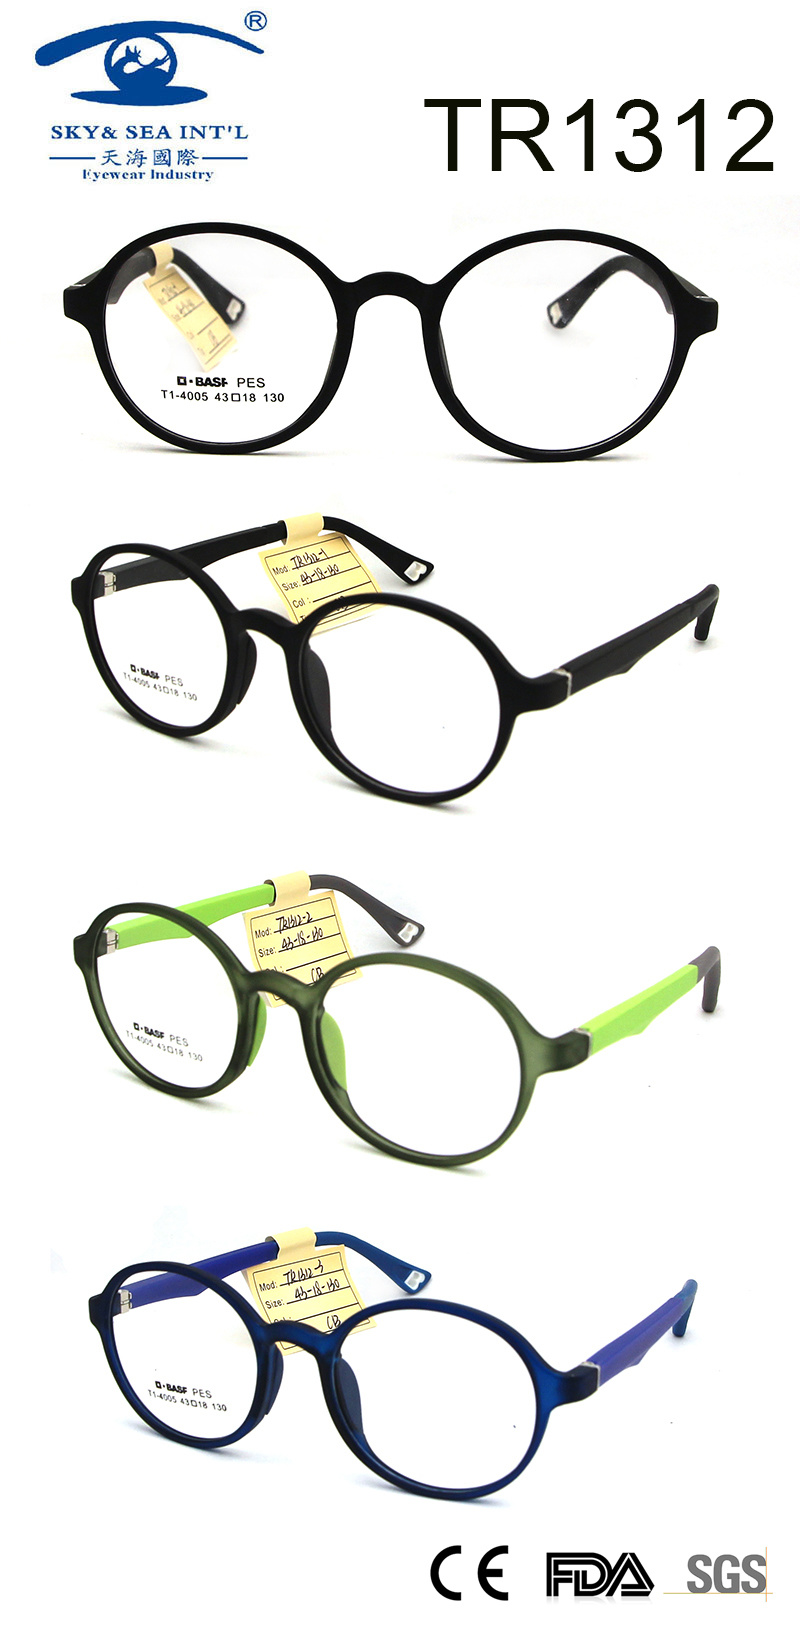 Fashion Eyewear Children Frame Colorful Design Rubber Silicone Nose Pads Pes Eyewear (TR1312)